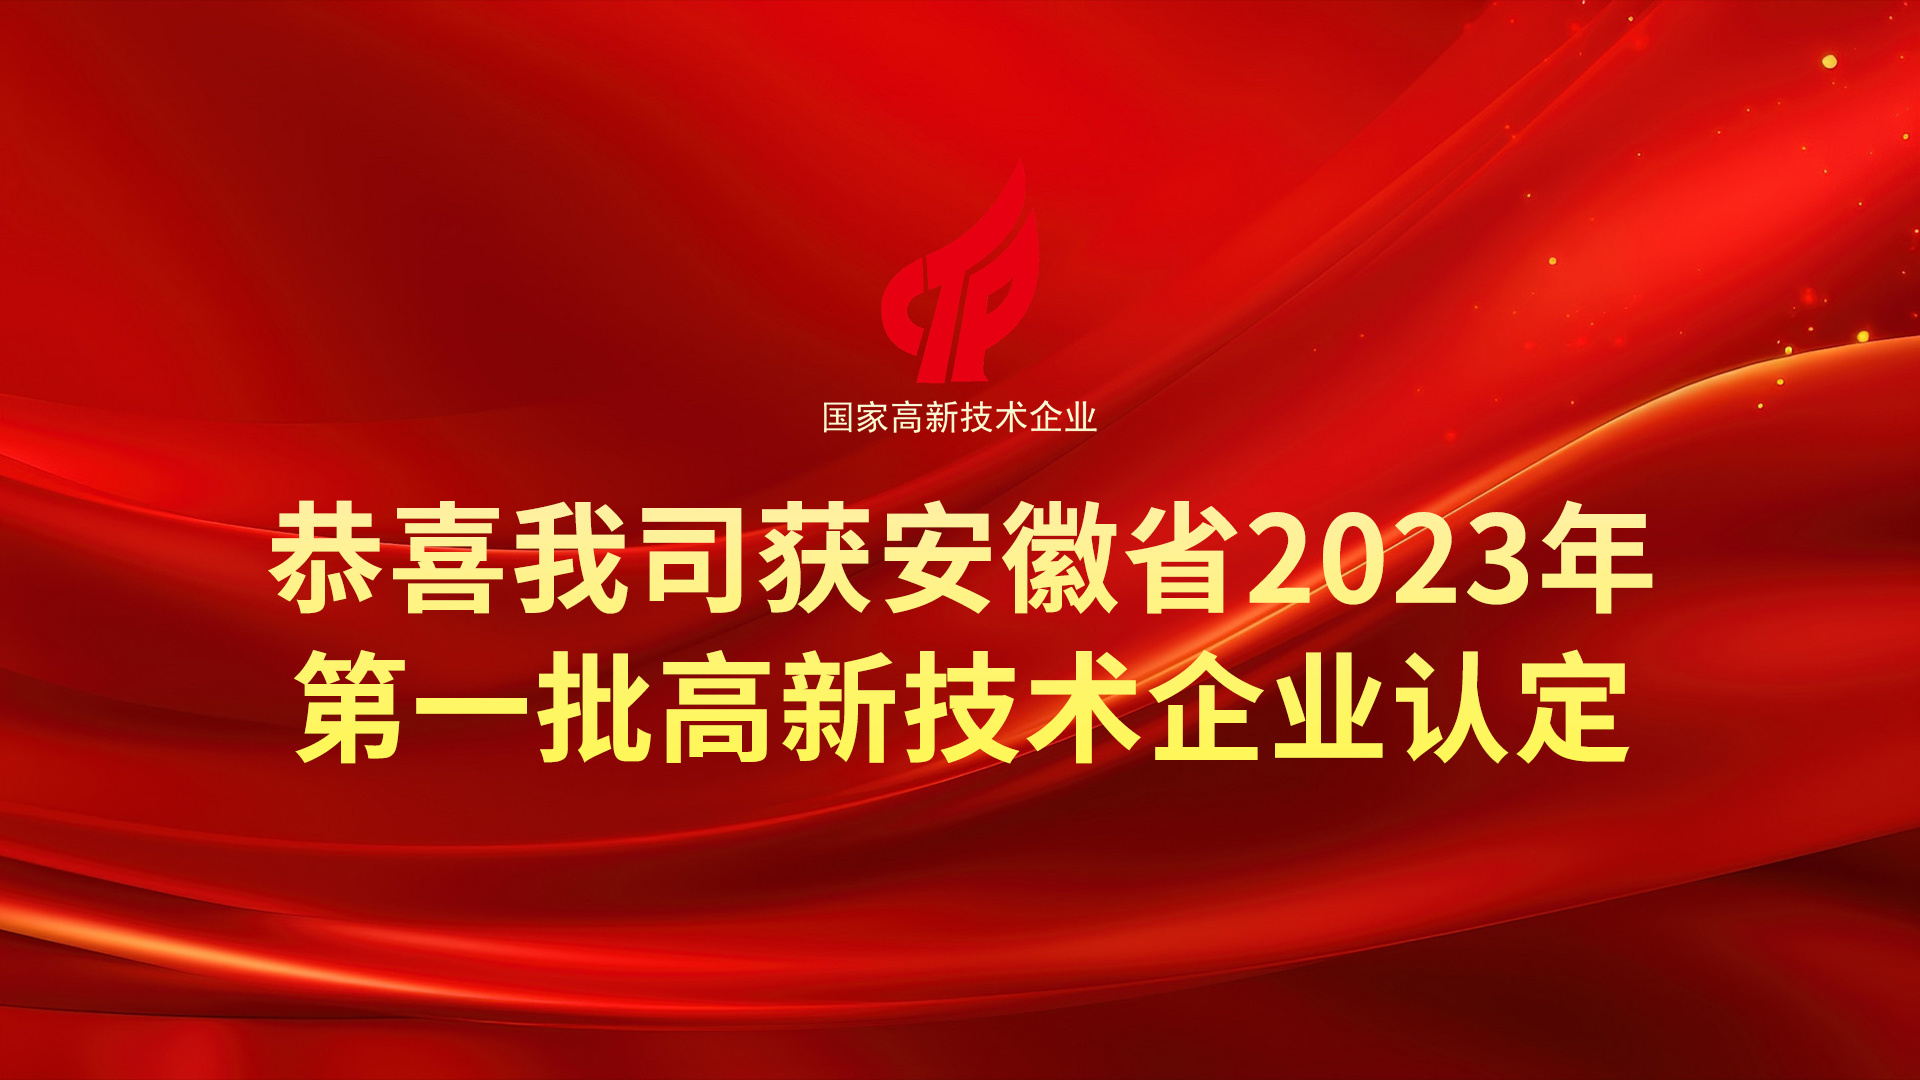 又一里程碑！热烈祝贺我司通过安徽省2023年第一批高 新技术企业认定！